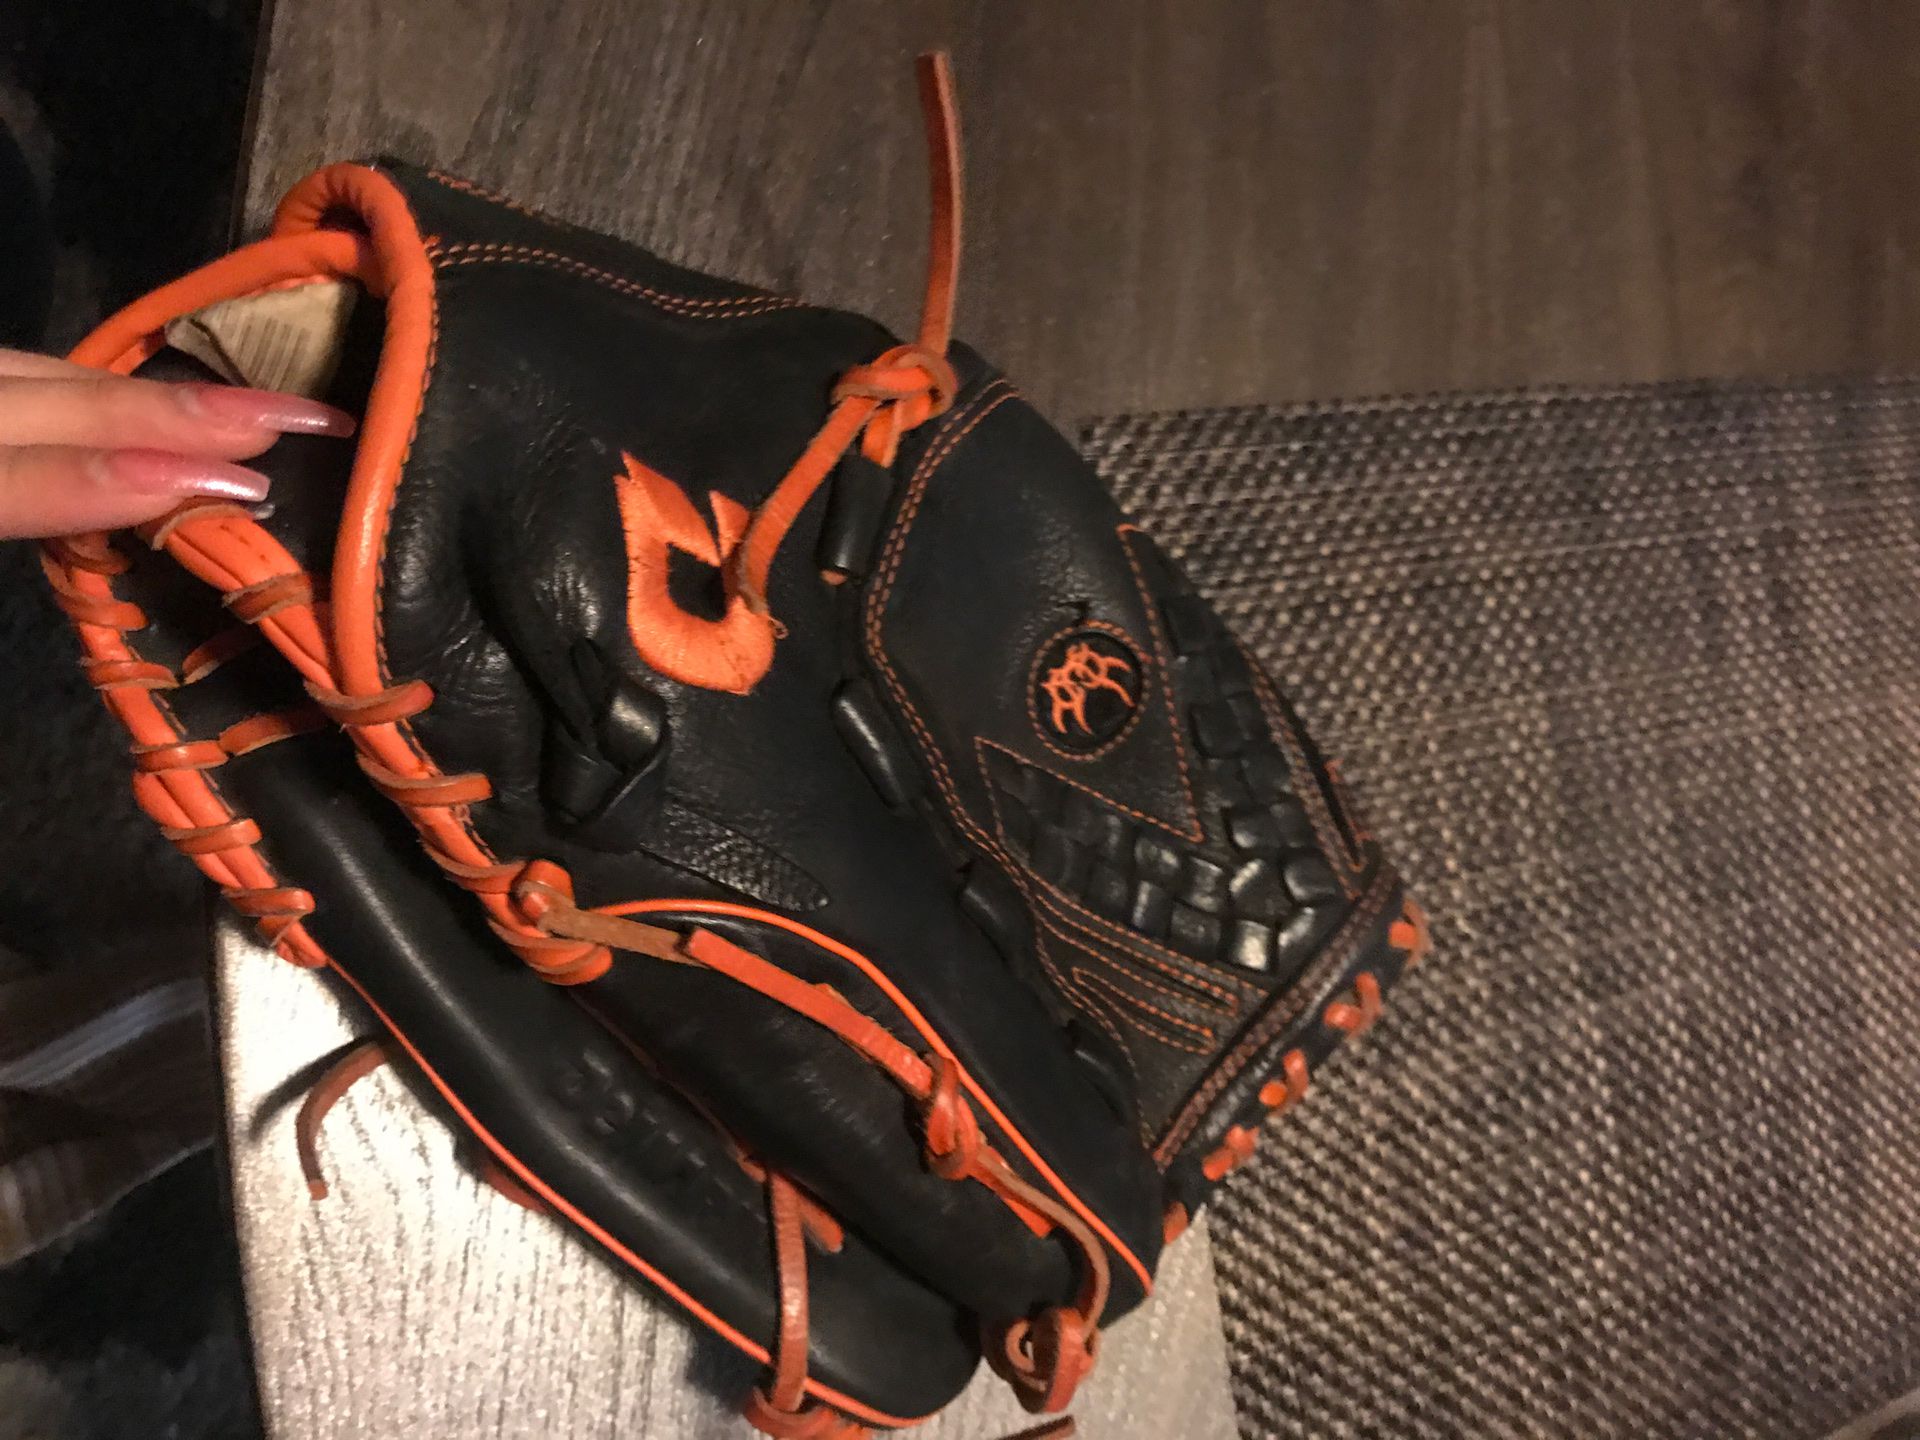 DeMrini baseball glove